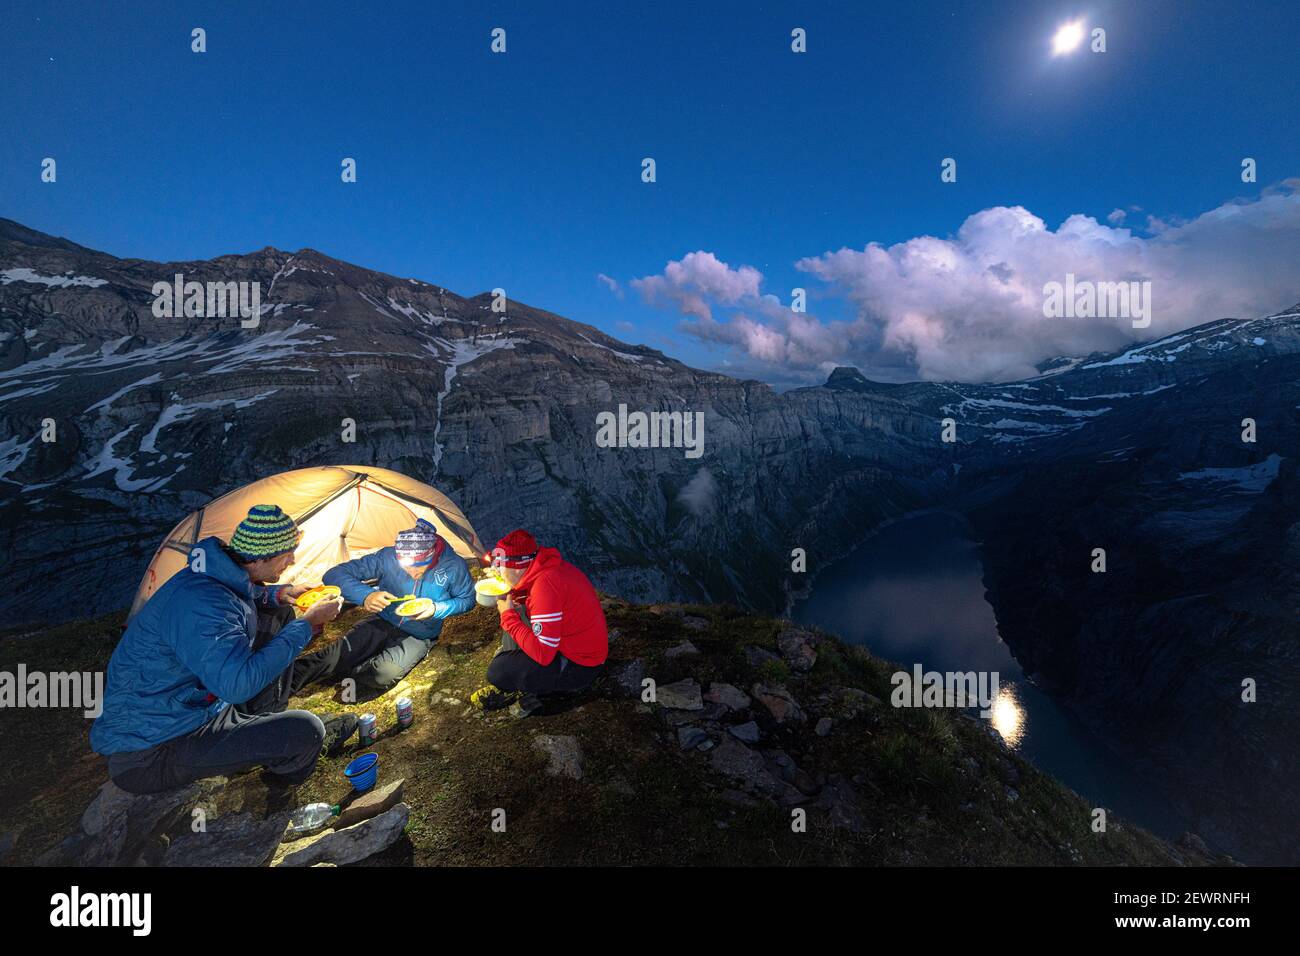 Tre uomini escursionisti godendo cena fuori una tenda sopra il lago Limmernsee al crepuscolo, Canton Glarona, Svizzera, Europa Foto Stock